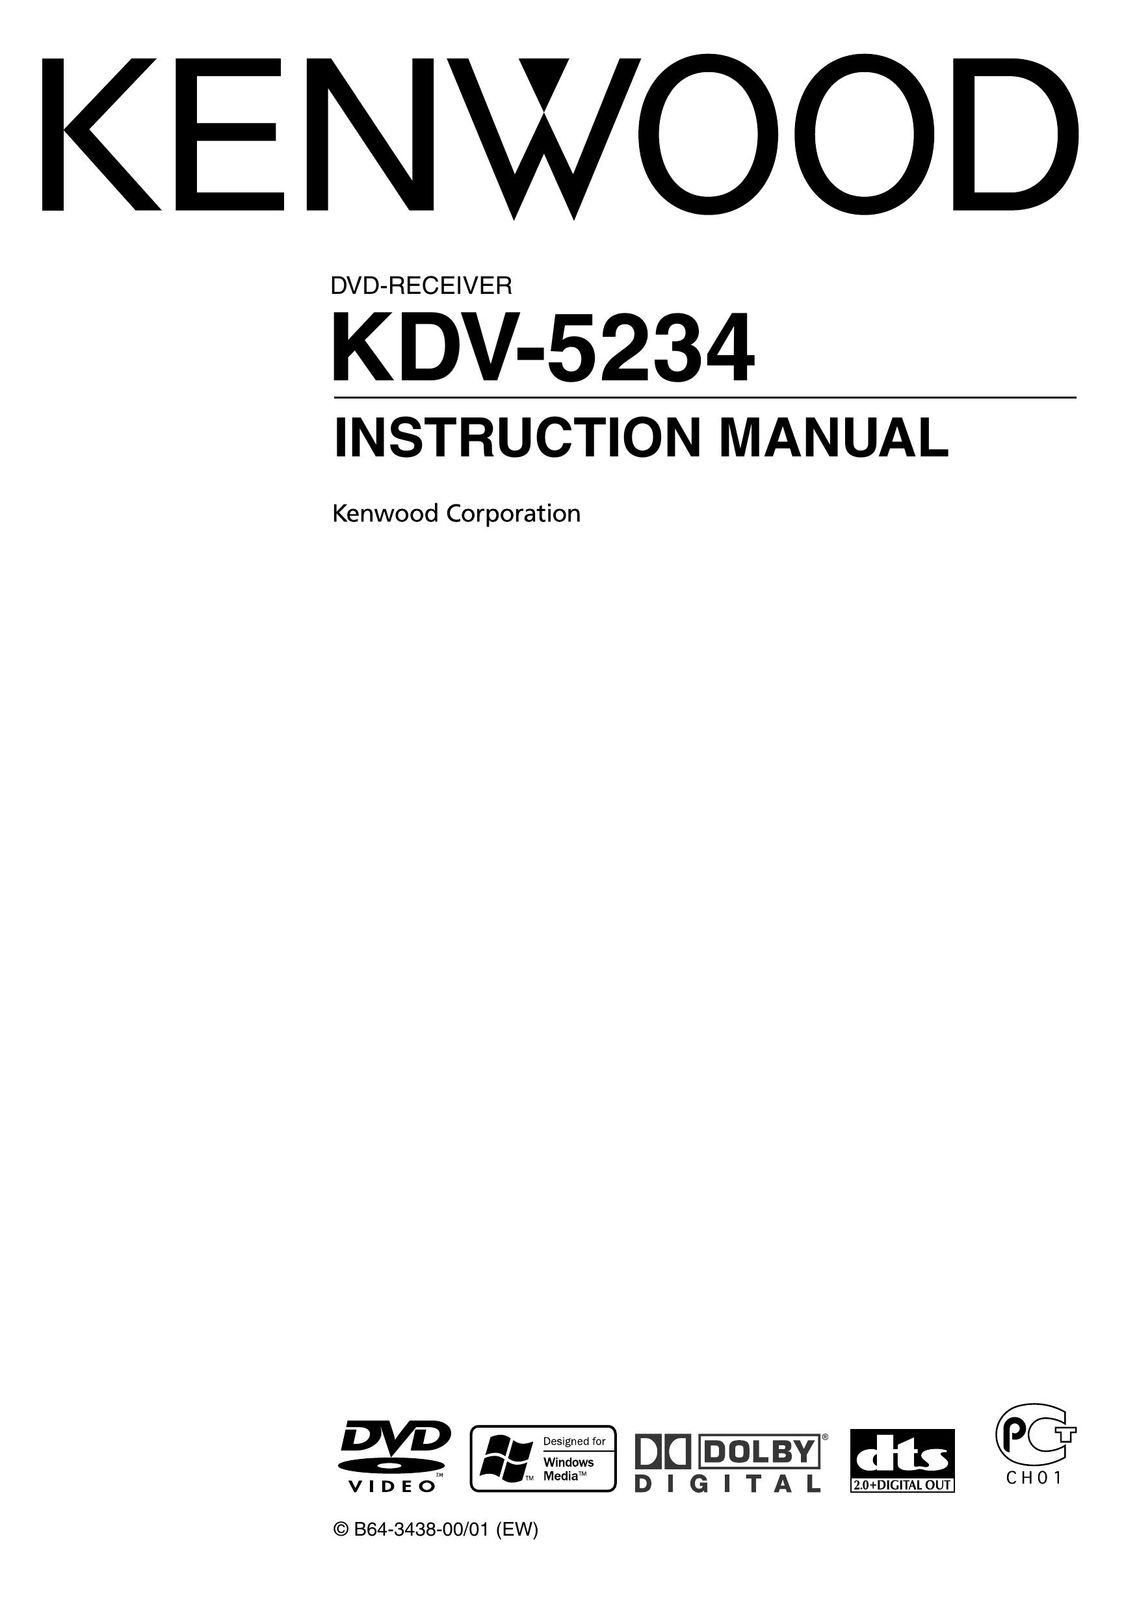 Kenwood KDV-5234 DVD Player User Manual